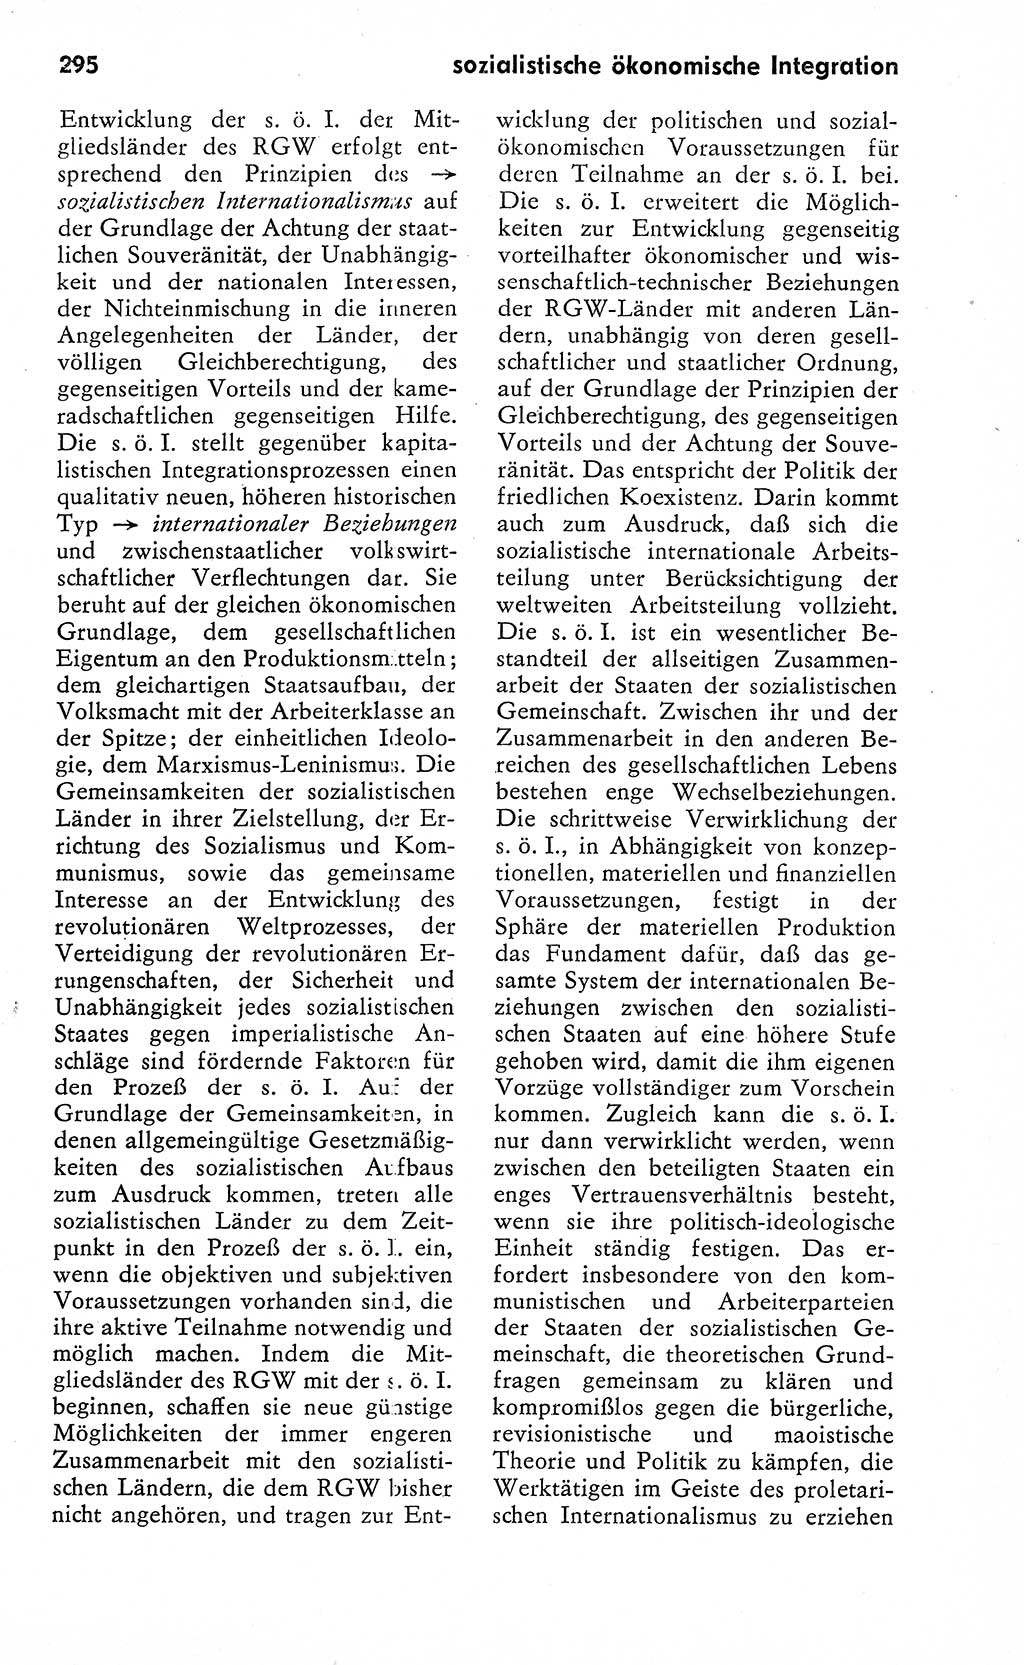 Wörterbuch zum sozialistischen Staat [Deutsche Demokratische Republik (DDR)] 1974, Seite 295 (Wb. soz. St. DDR 1974, S. 295)